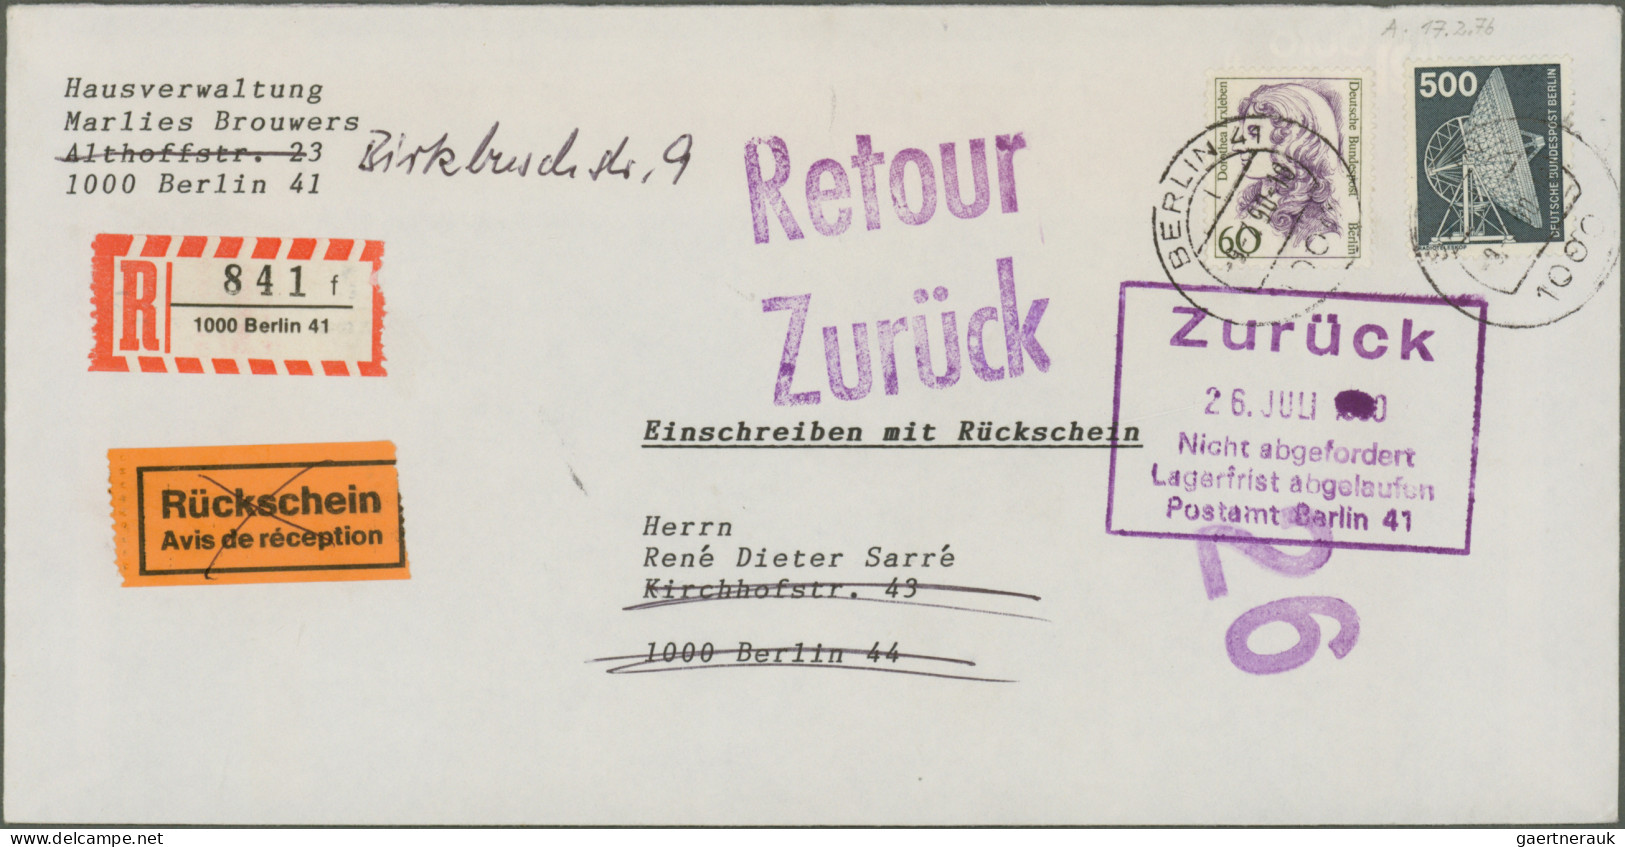 Berlin: 1961/1991, vielseitige Partie von ca. 165 Briefen und Karten, alle mit B